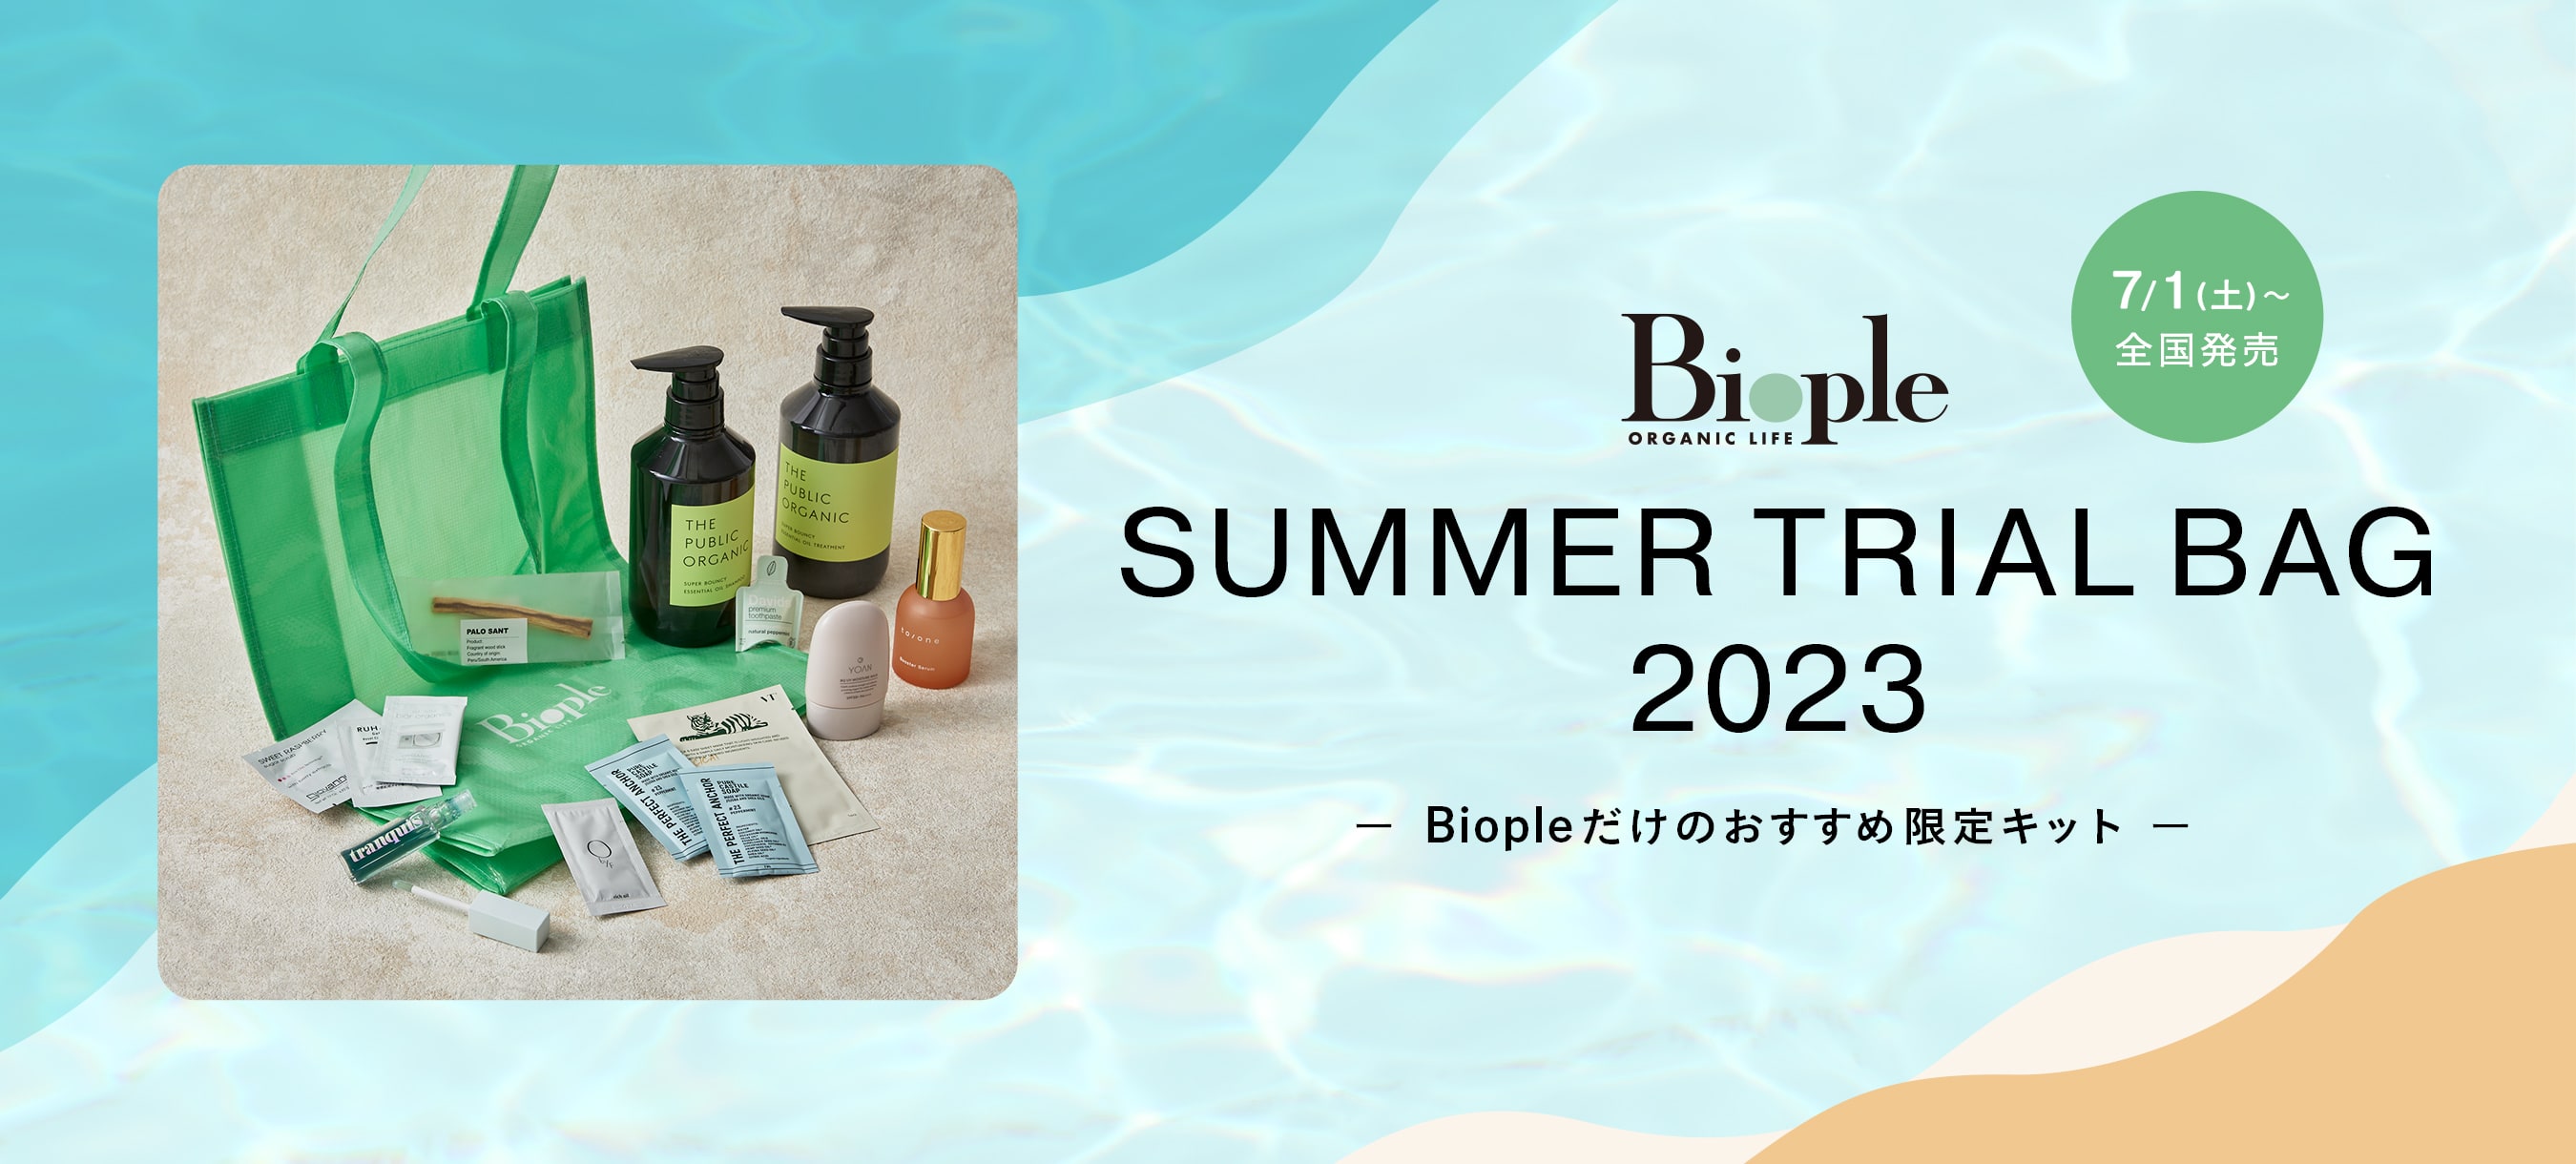 Biople SUMMER TRIAL BAG 2023 7/1 発売開始